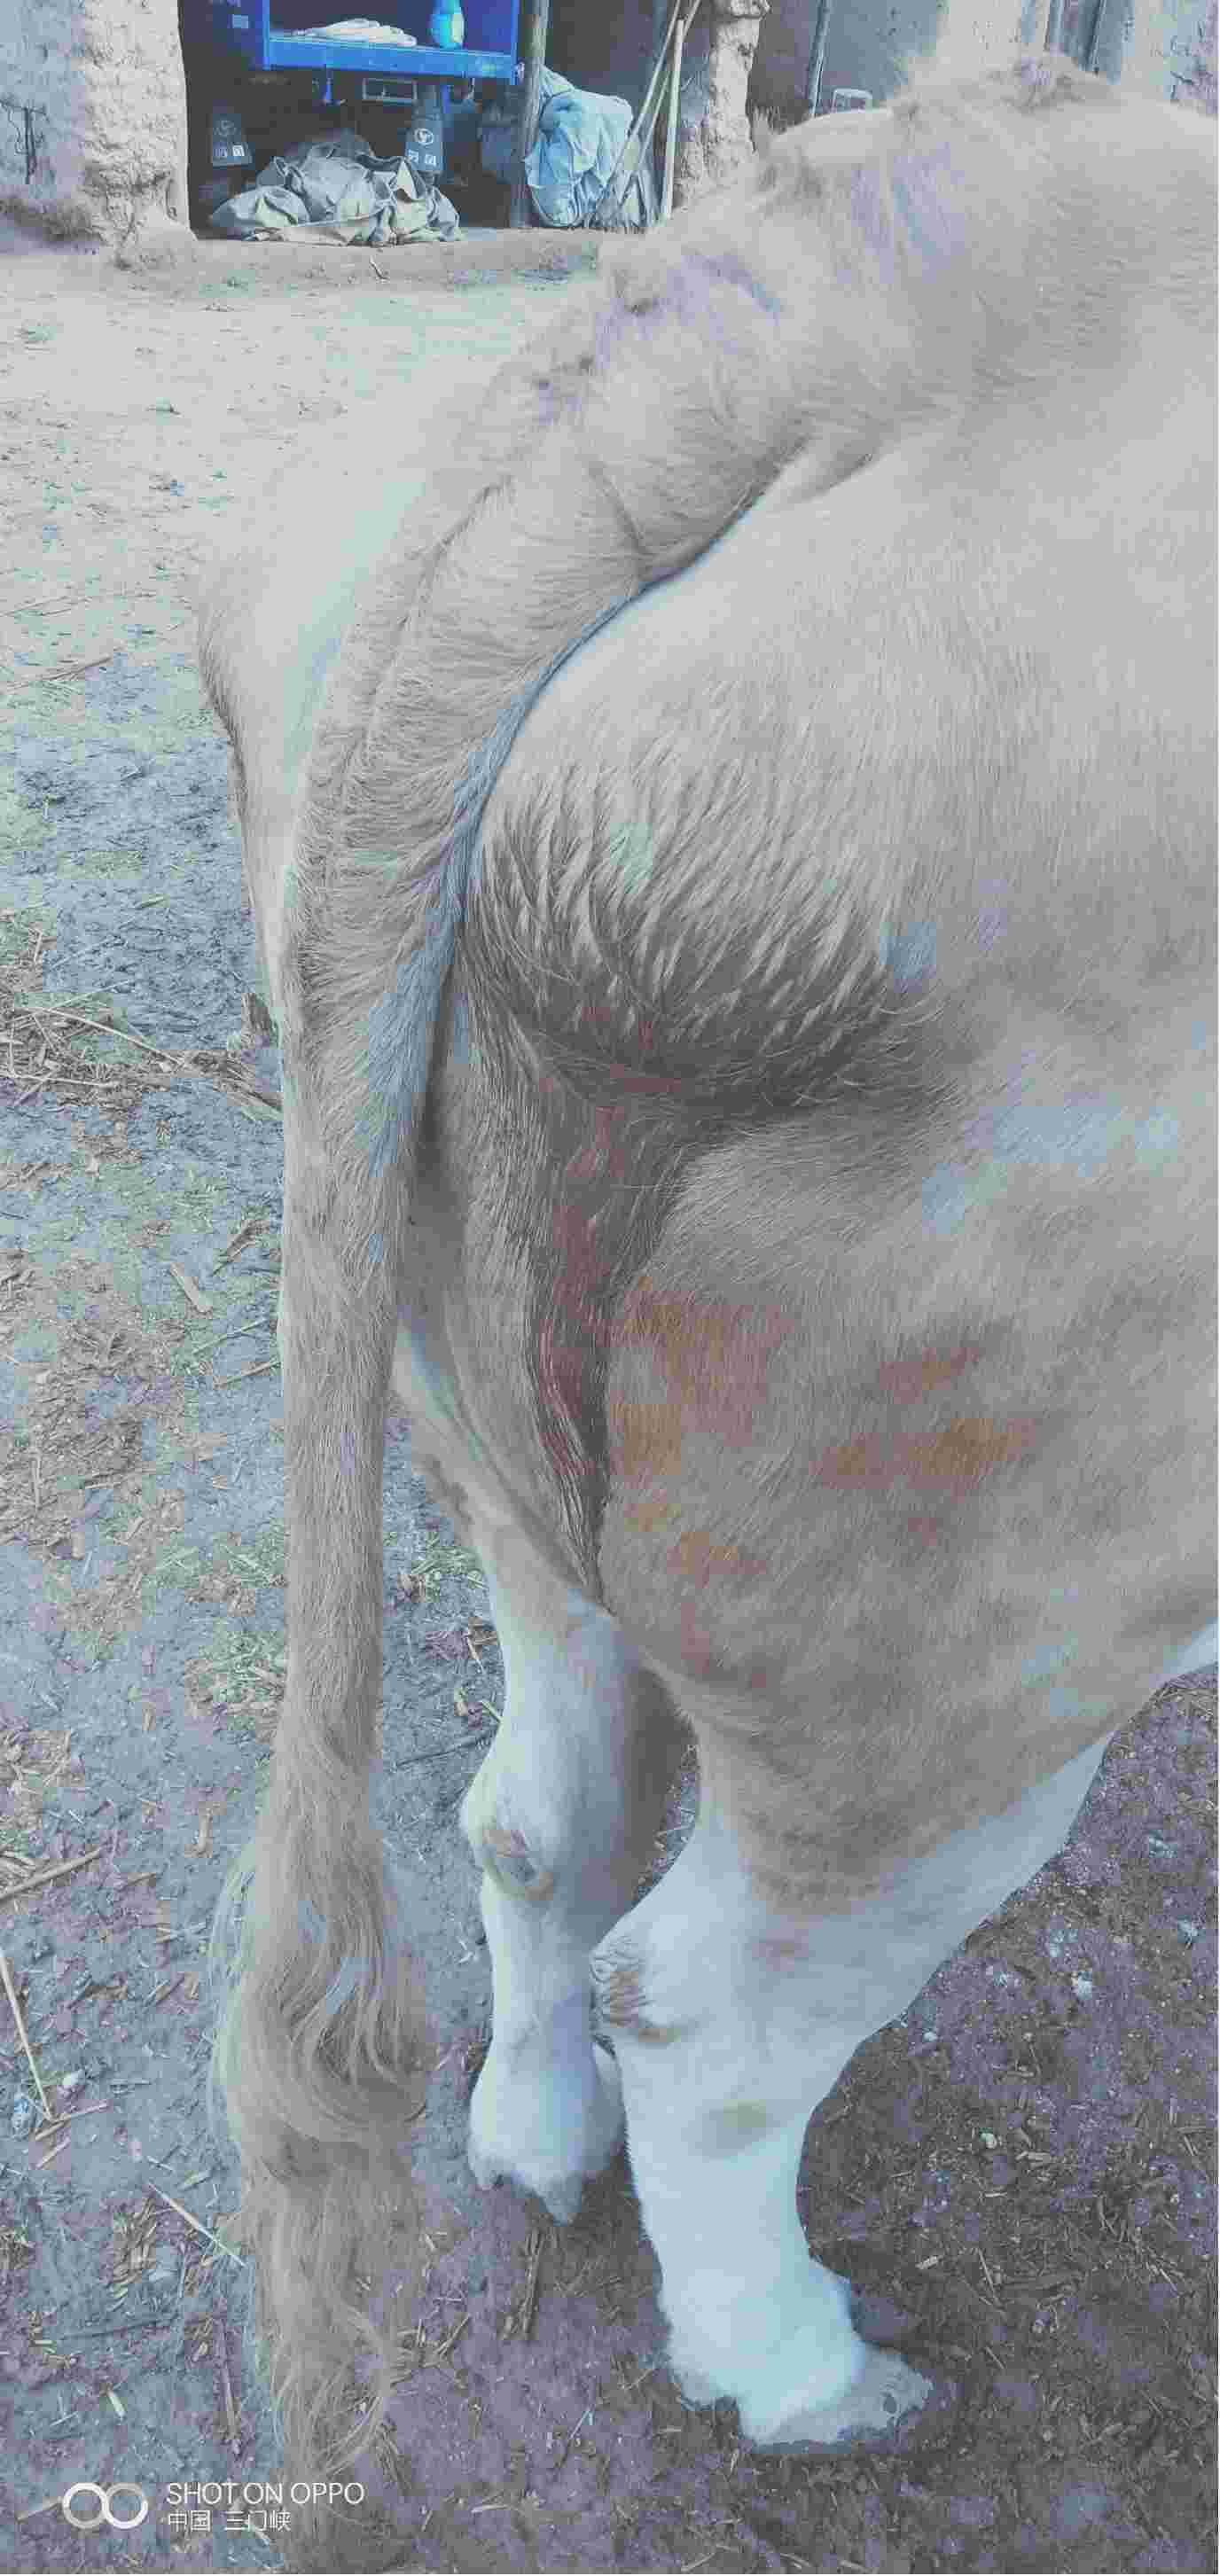 母牛水门照片红肿图片